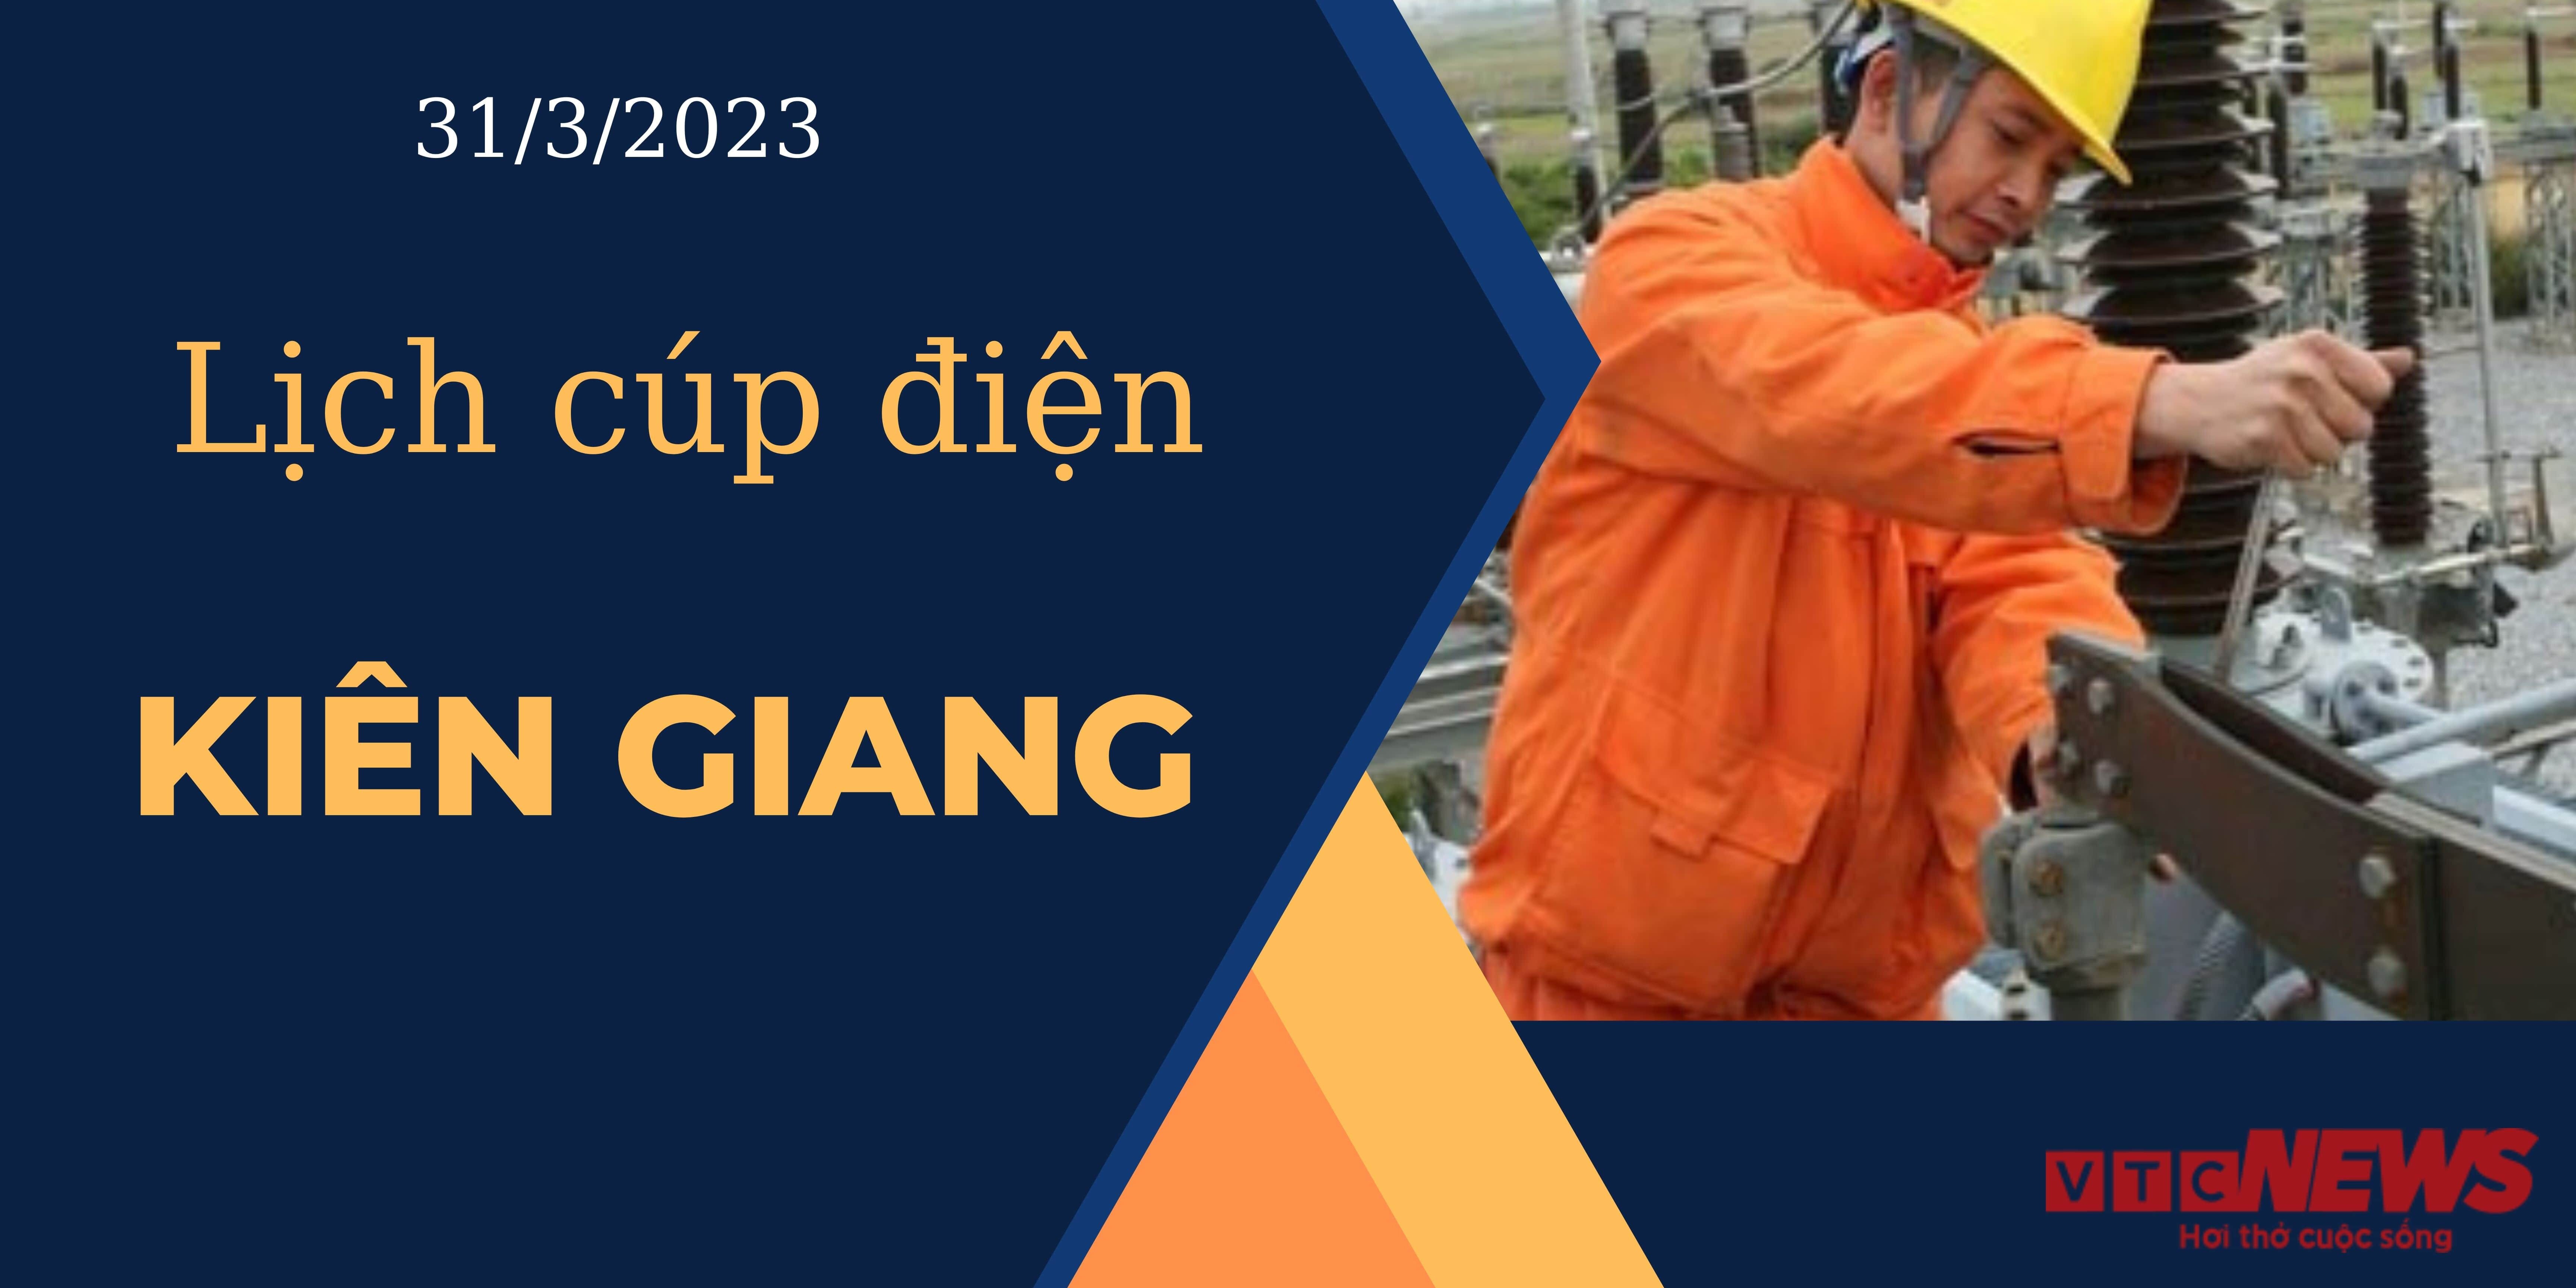 Lịch cúp điện hôm nay ngày 31/3/2023 tại Kiên Giang - 1